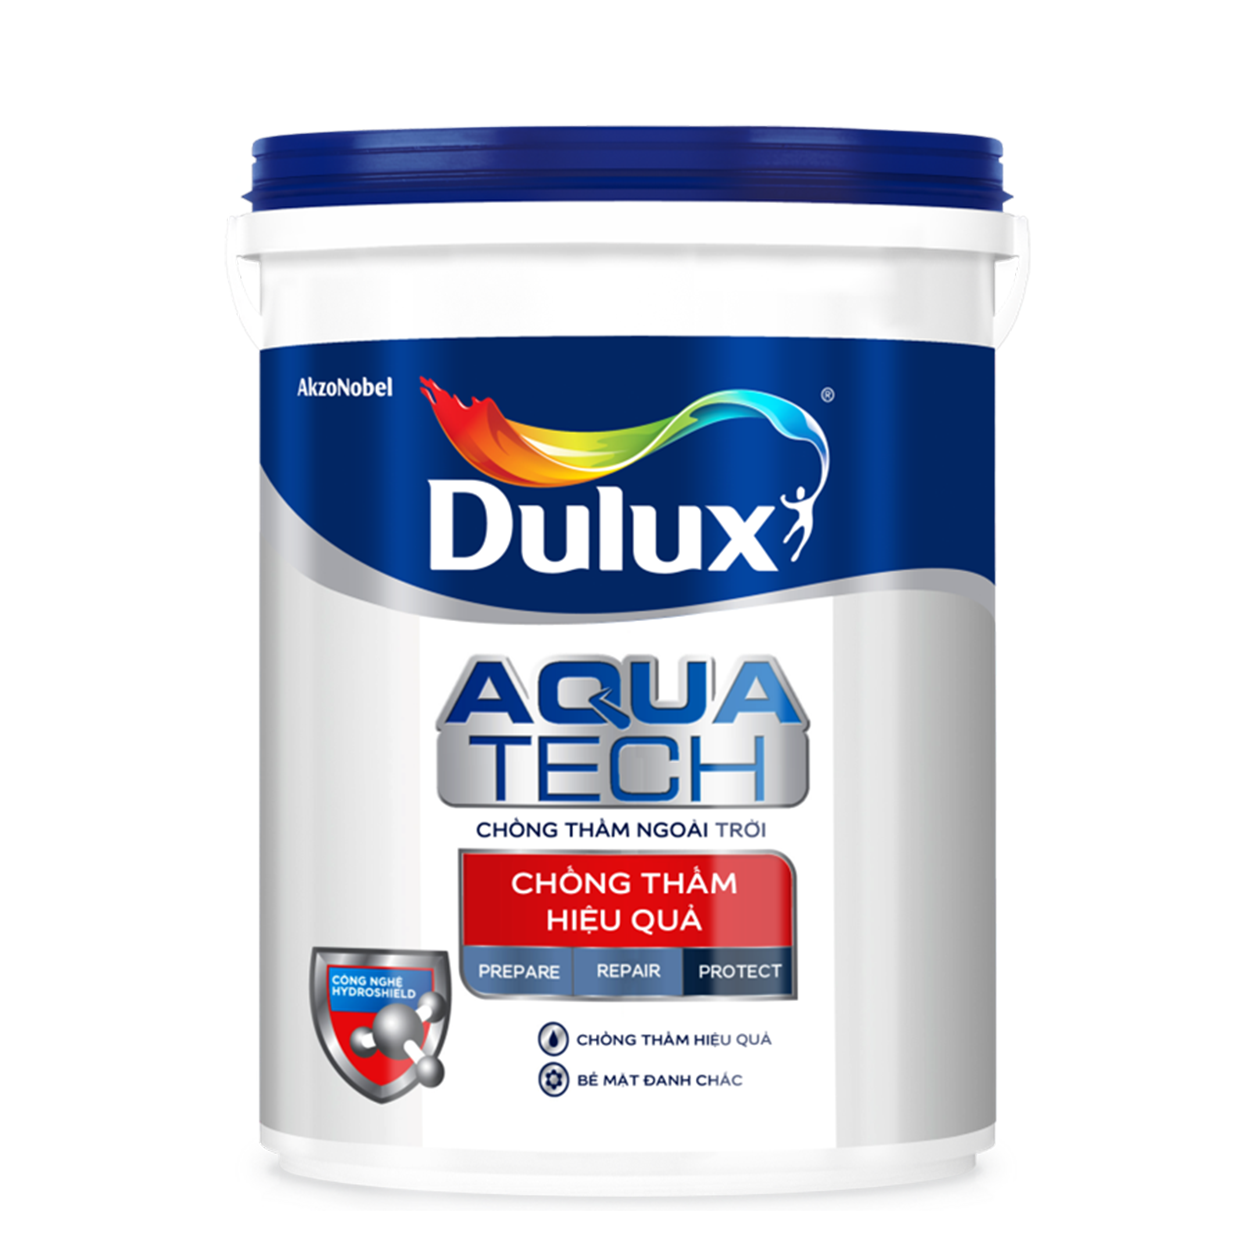 Sơn chống thấm Dulux Aquatech có hiệu quả không?
